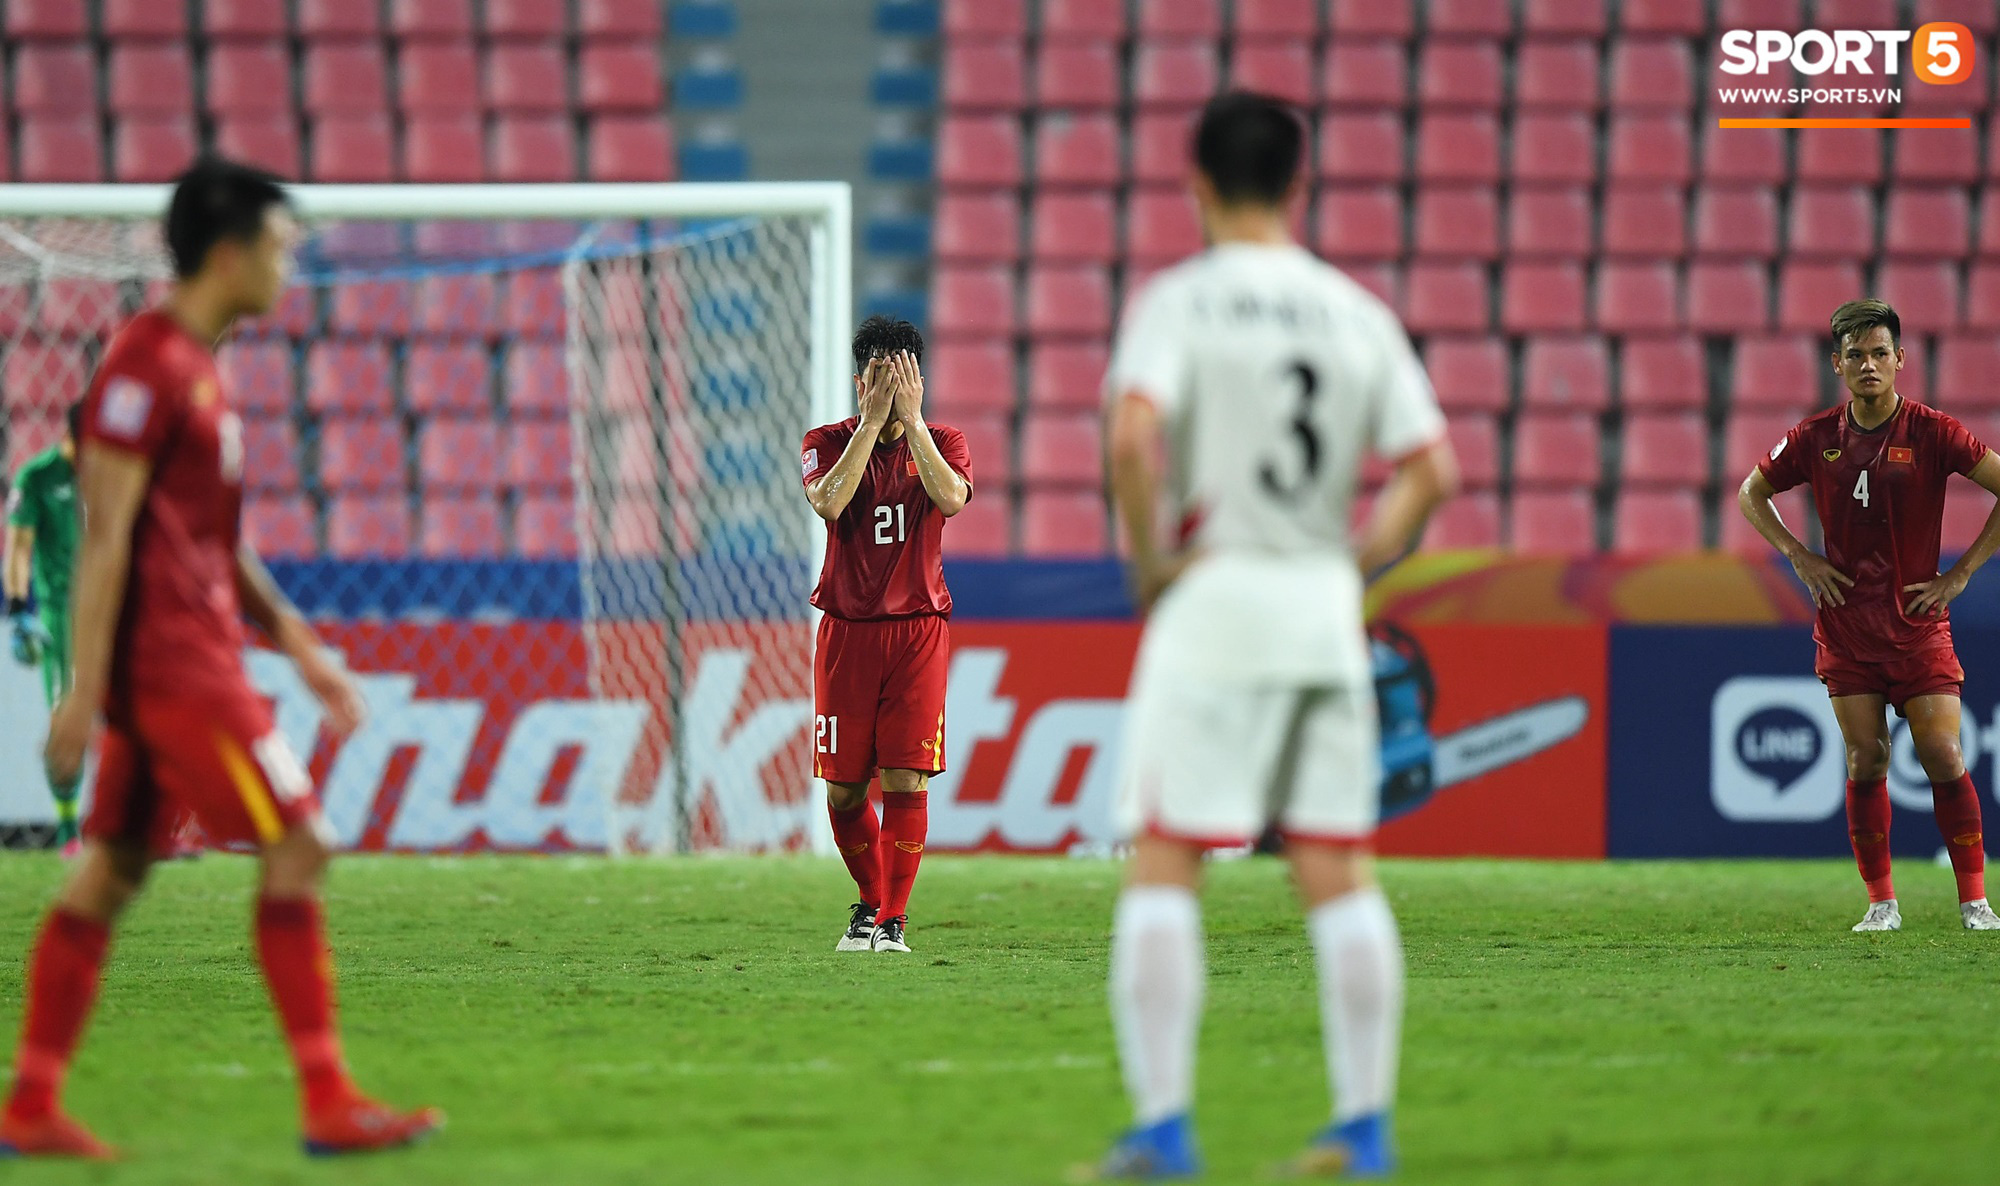 Khoảnh khắc đáng buồn nhất VCK U23 châu Á 2020: Đình Trọng nhận thẻ đỏ, U23 Việt Nam mất hết sau trận đấu với CHDCND Triều Tiến - Ảnh 2.